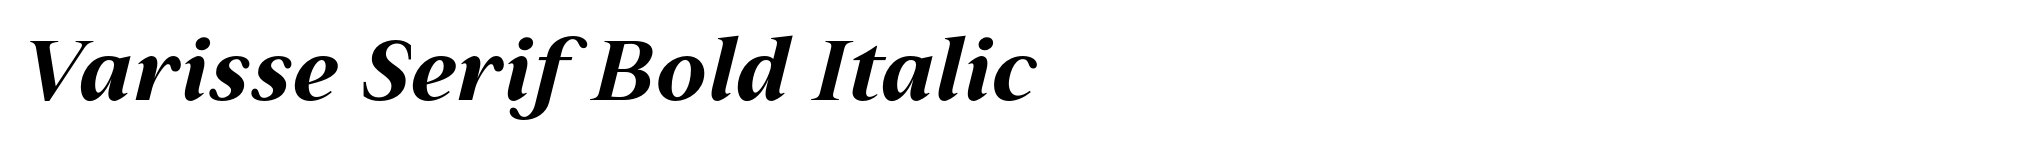 Varisse Serif Bold Italic image